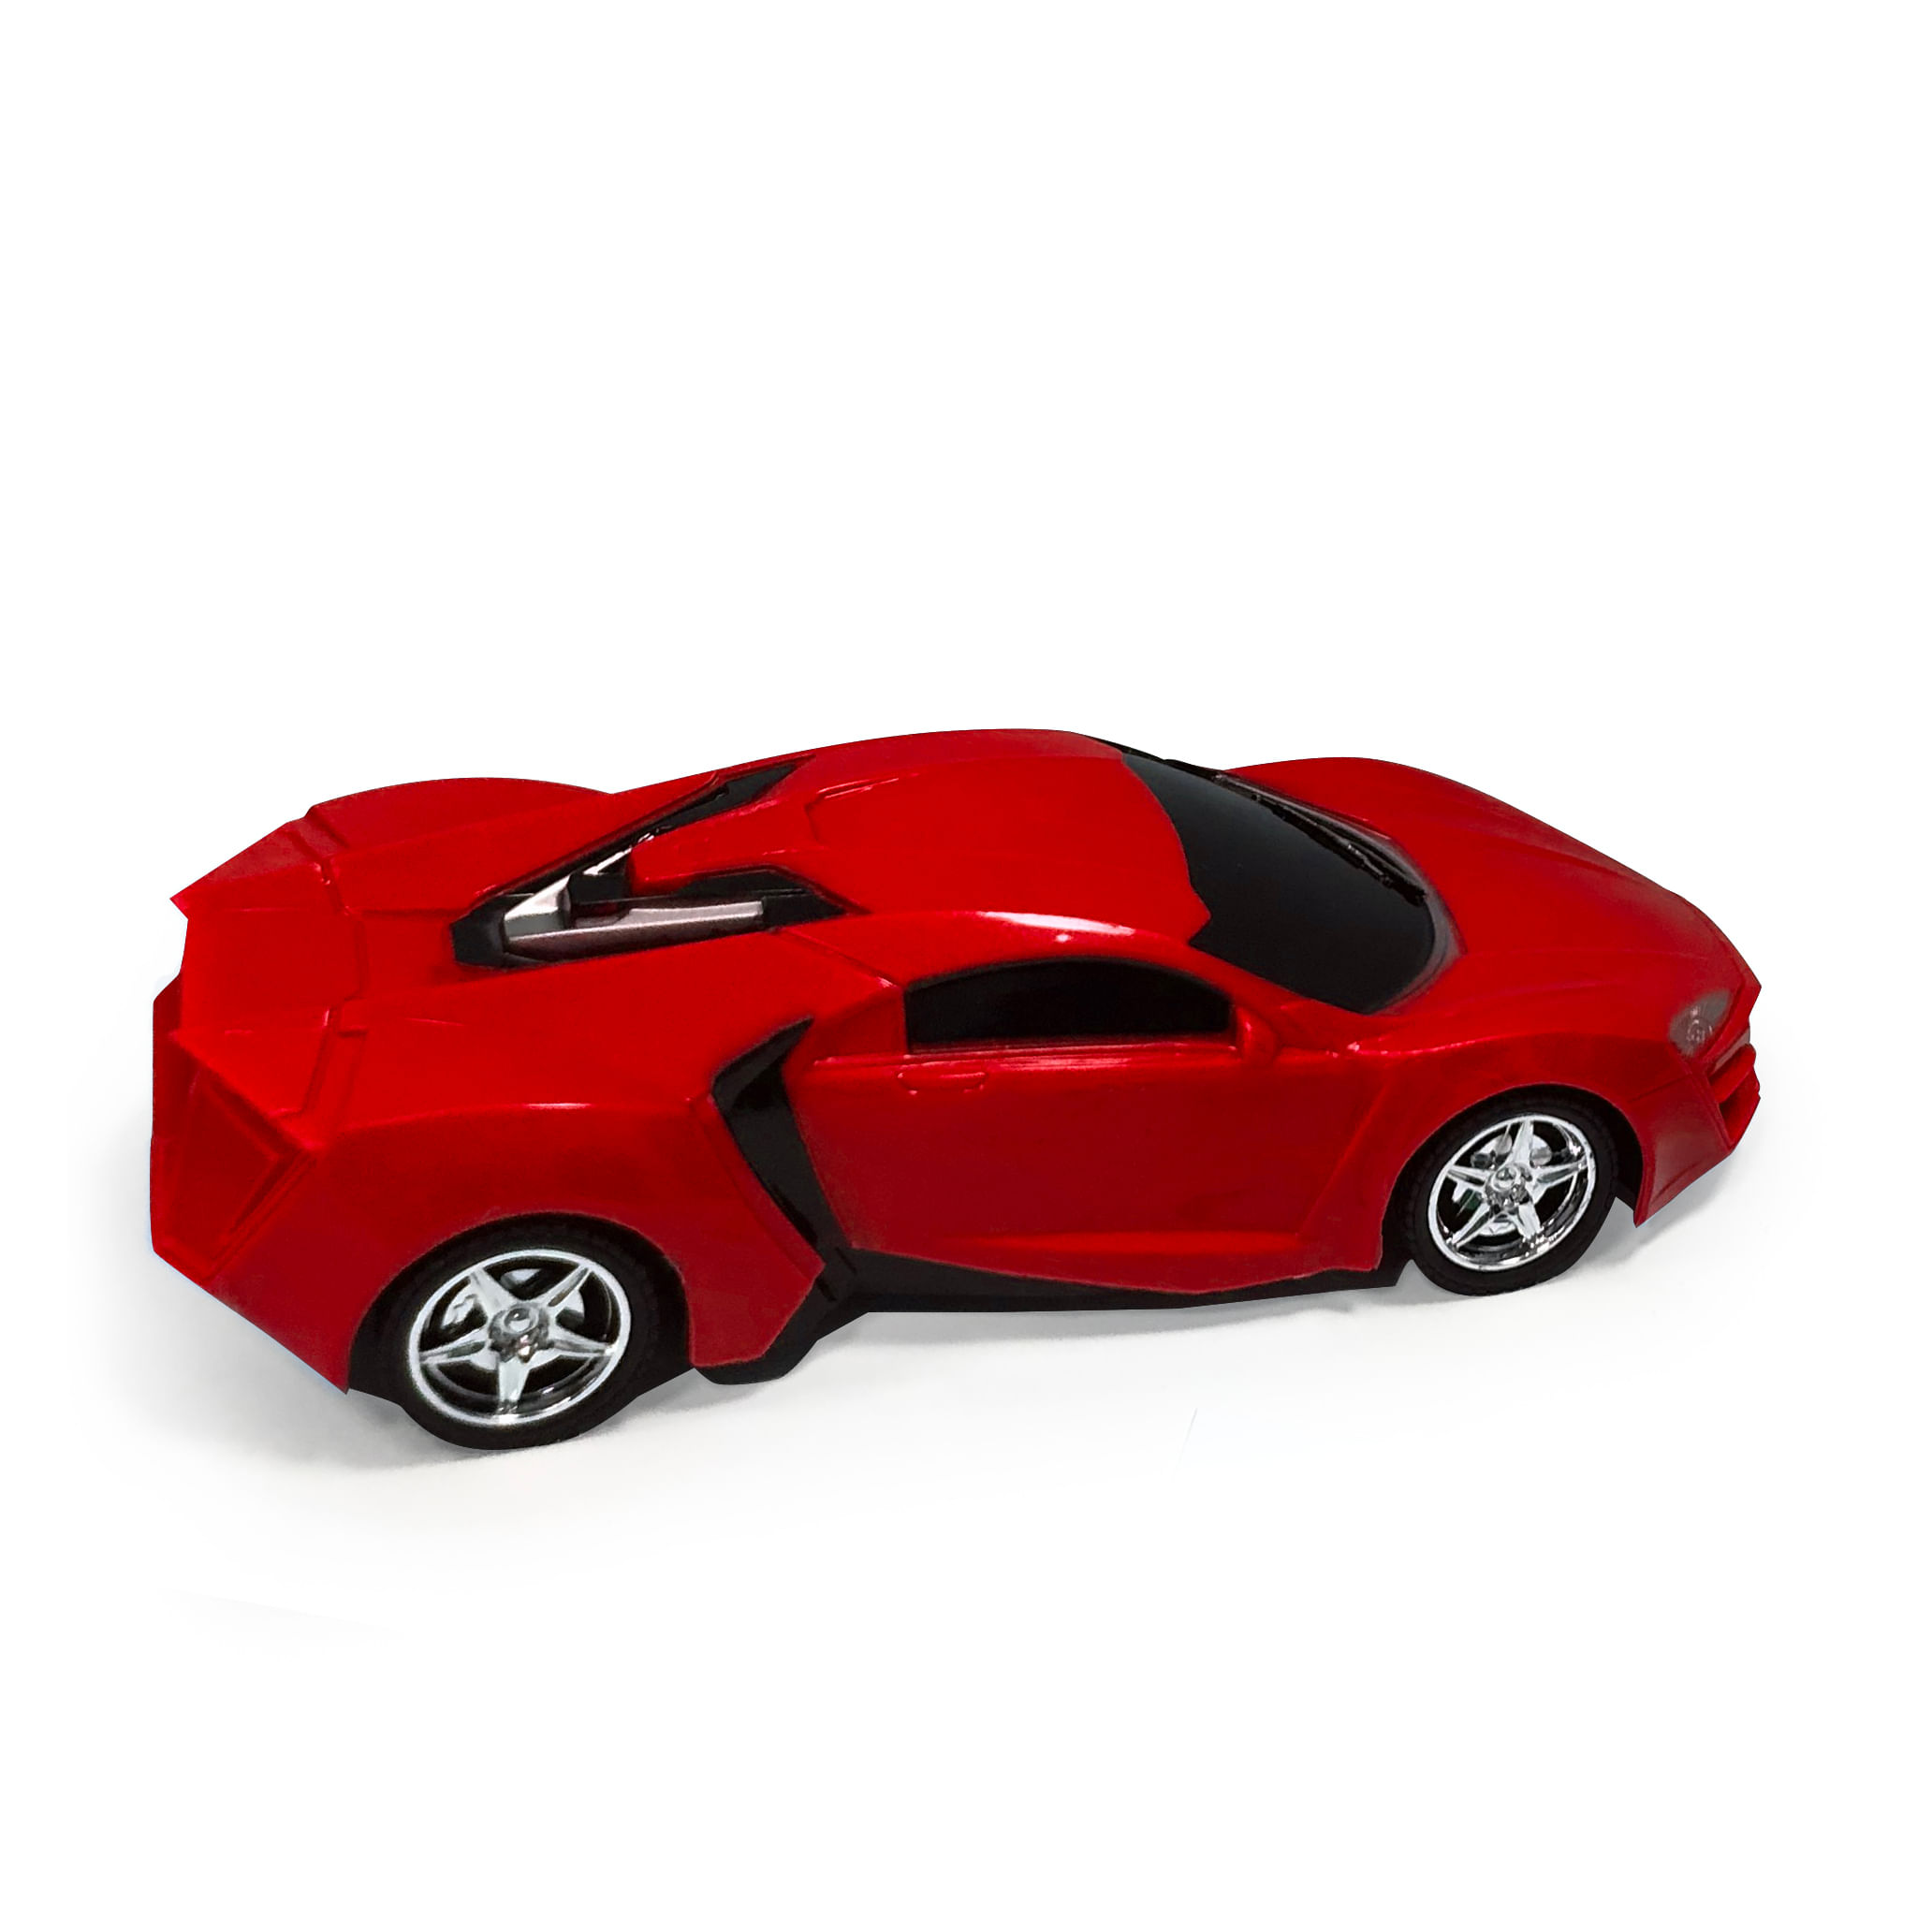 Carrinho de Controle Remoto - Hot Speeds - Vermelho - 1:18 - 22cm -  superlegalbrinquedos